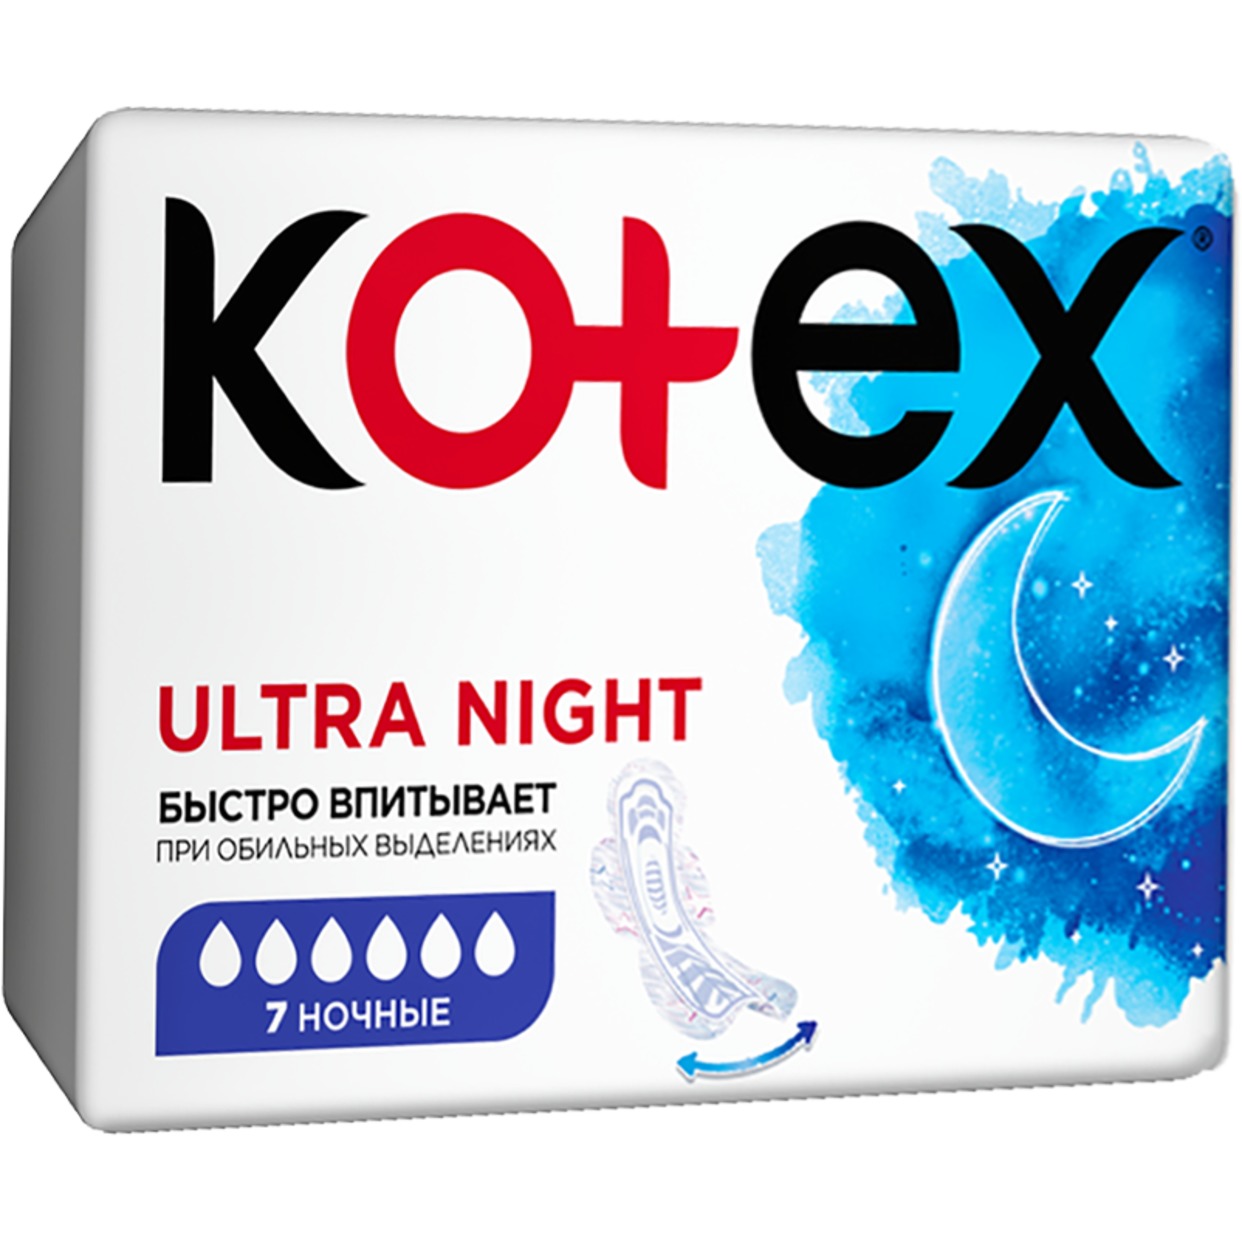 Прокладки Kotex Ultra Night ночные 7 шт. по акции в Пятерочке